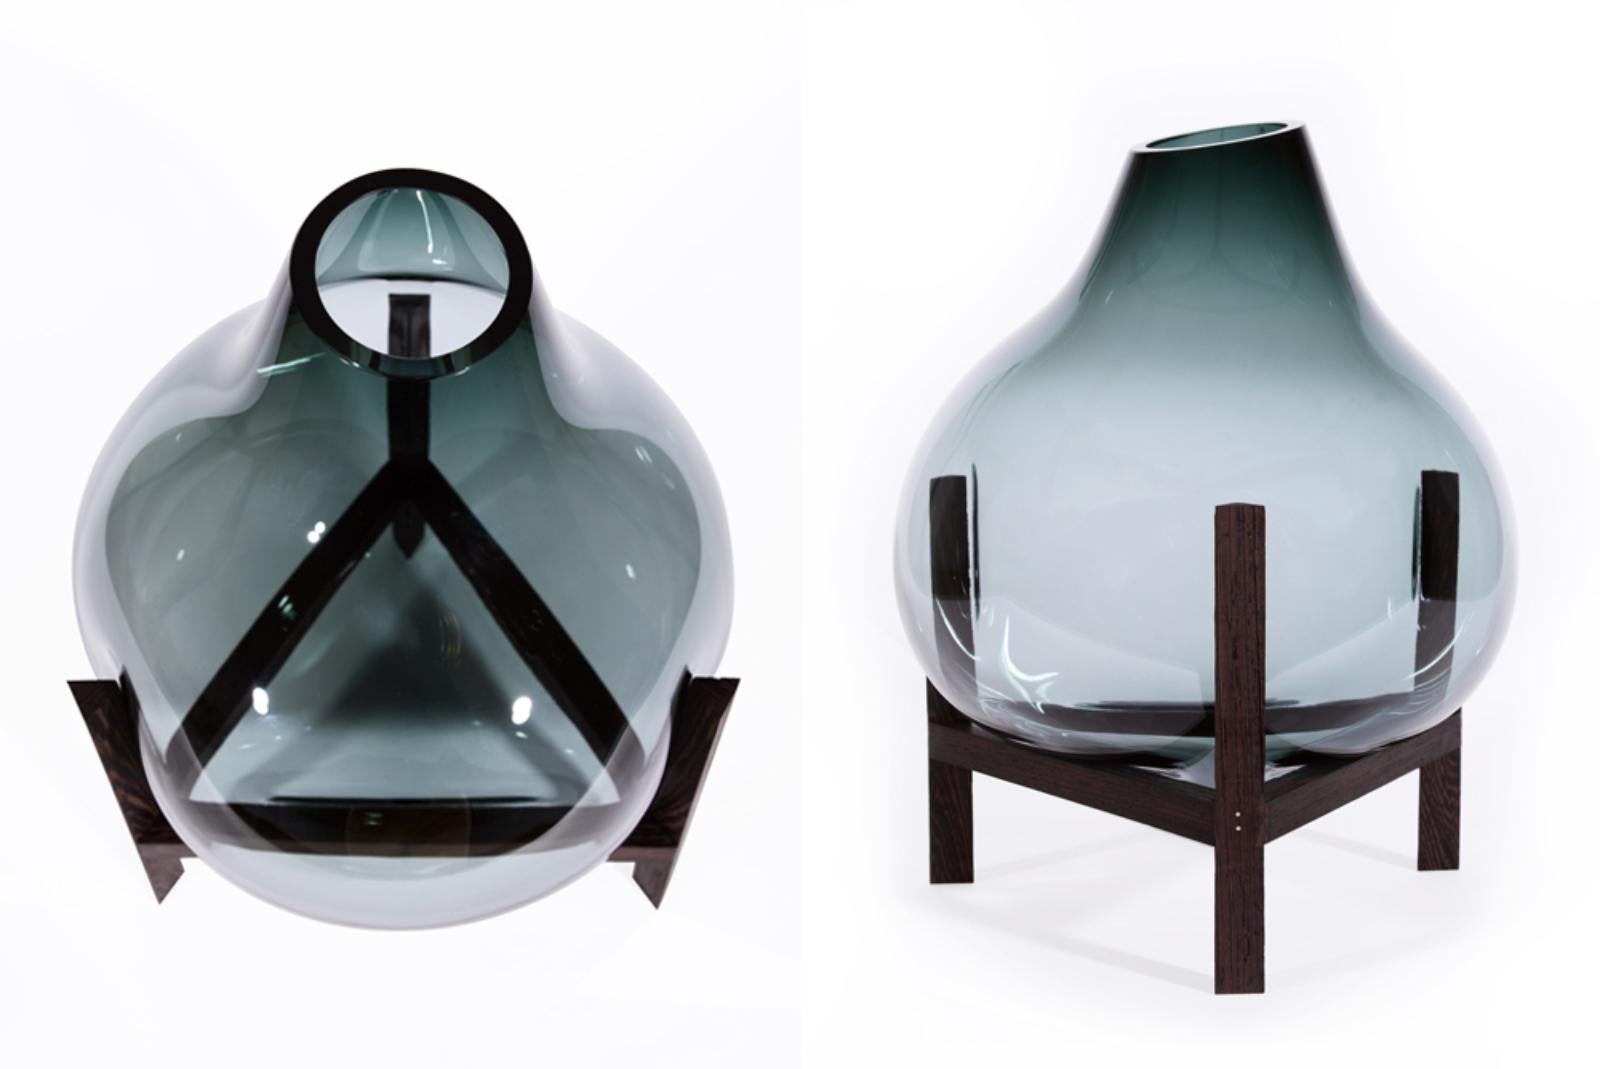 Other Round Square Grey Triangular Vase by Studio Thier & Van Daalen For Sale